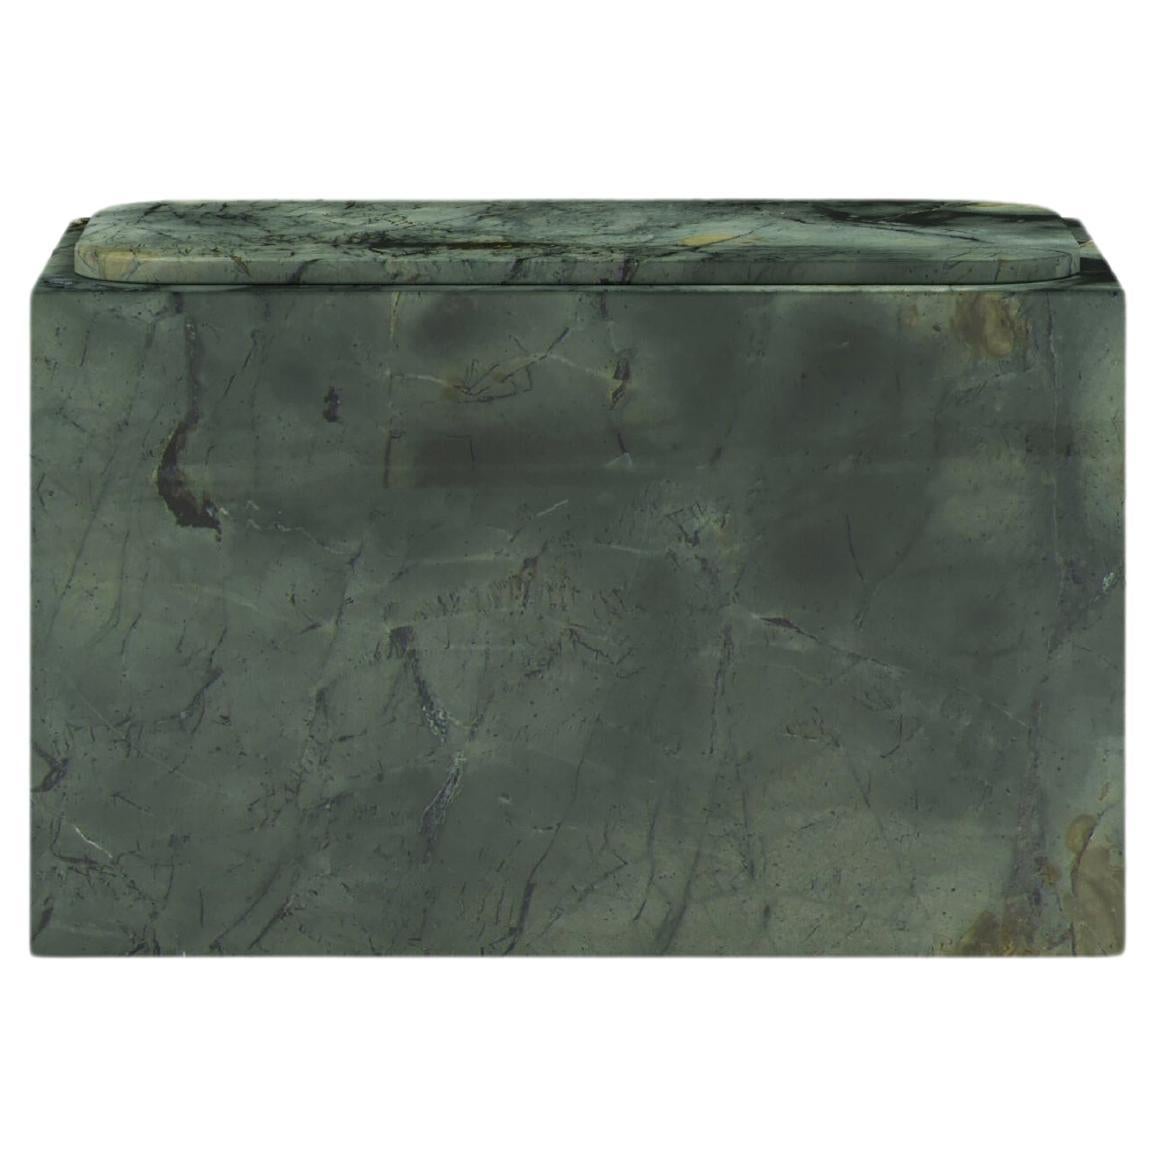 FORM(LA) Cubo Rectangle Side Table 30”L x 16"W x 19”H Verde Edinburgh Marble For Sale